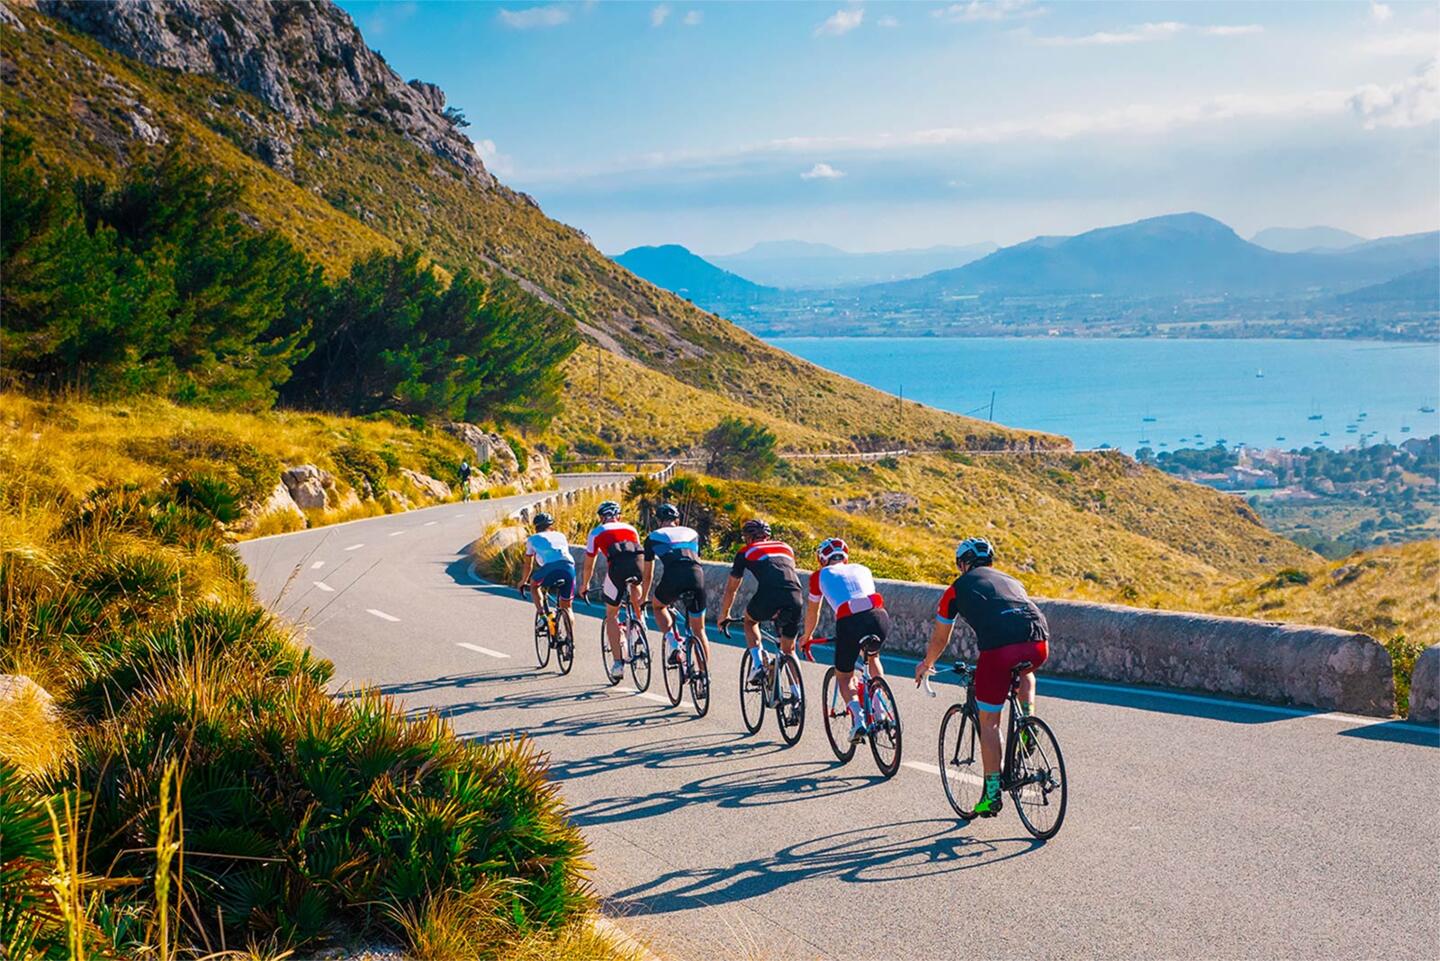 Cyclistes en compétition sur une route sinueuse en montagne pendant le Tour de France, avec une vue imprenable sur la baie en contrebas et la nature environnante, vivez l'expérience du Tour de France en séjournant chez Appart'City, l'hébergement idéal pour les fans de cyclisme.